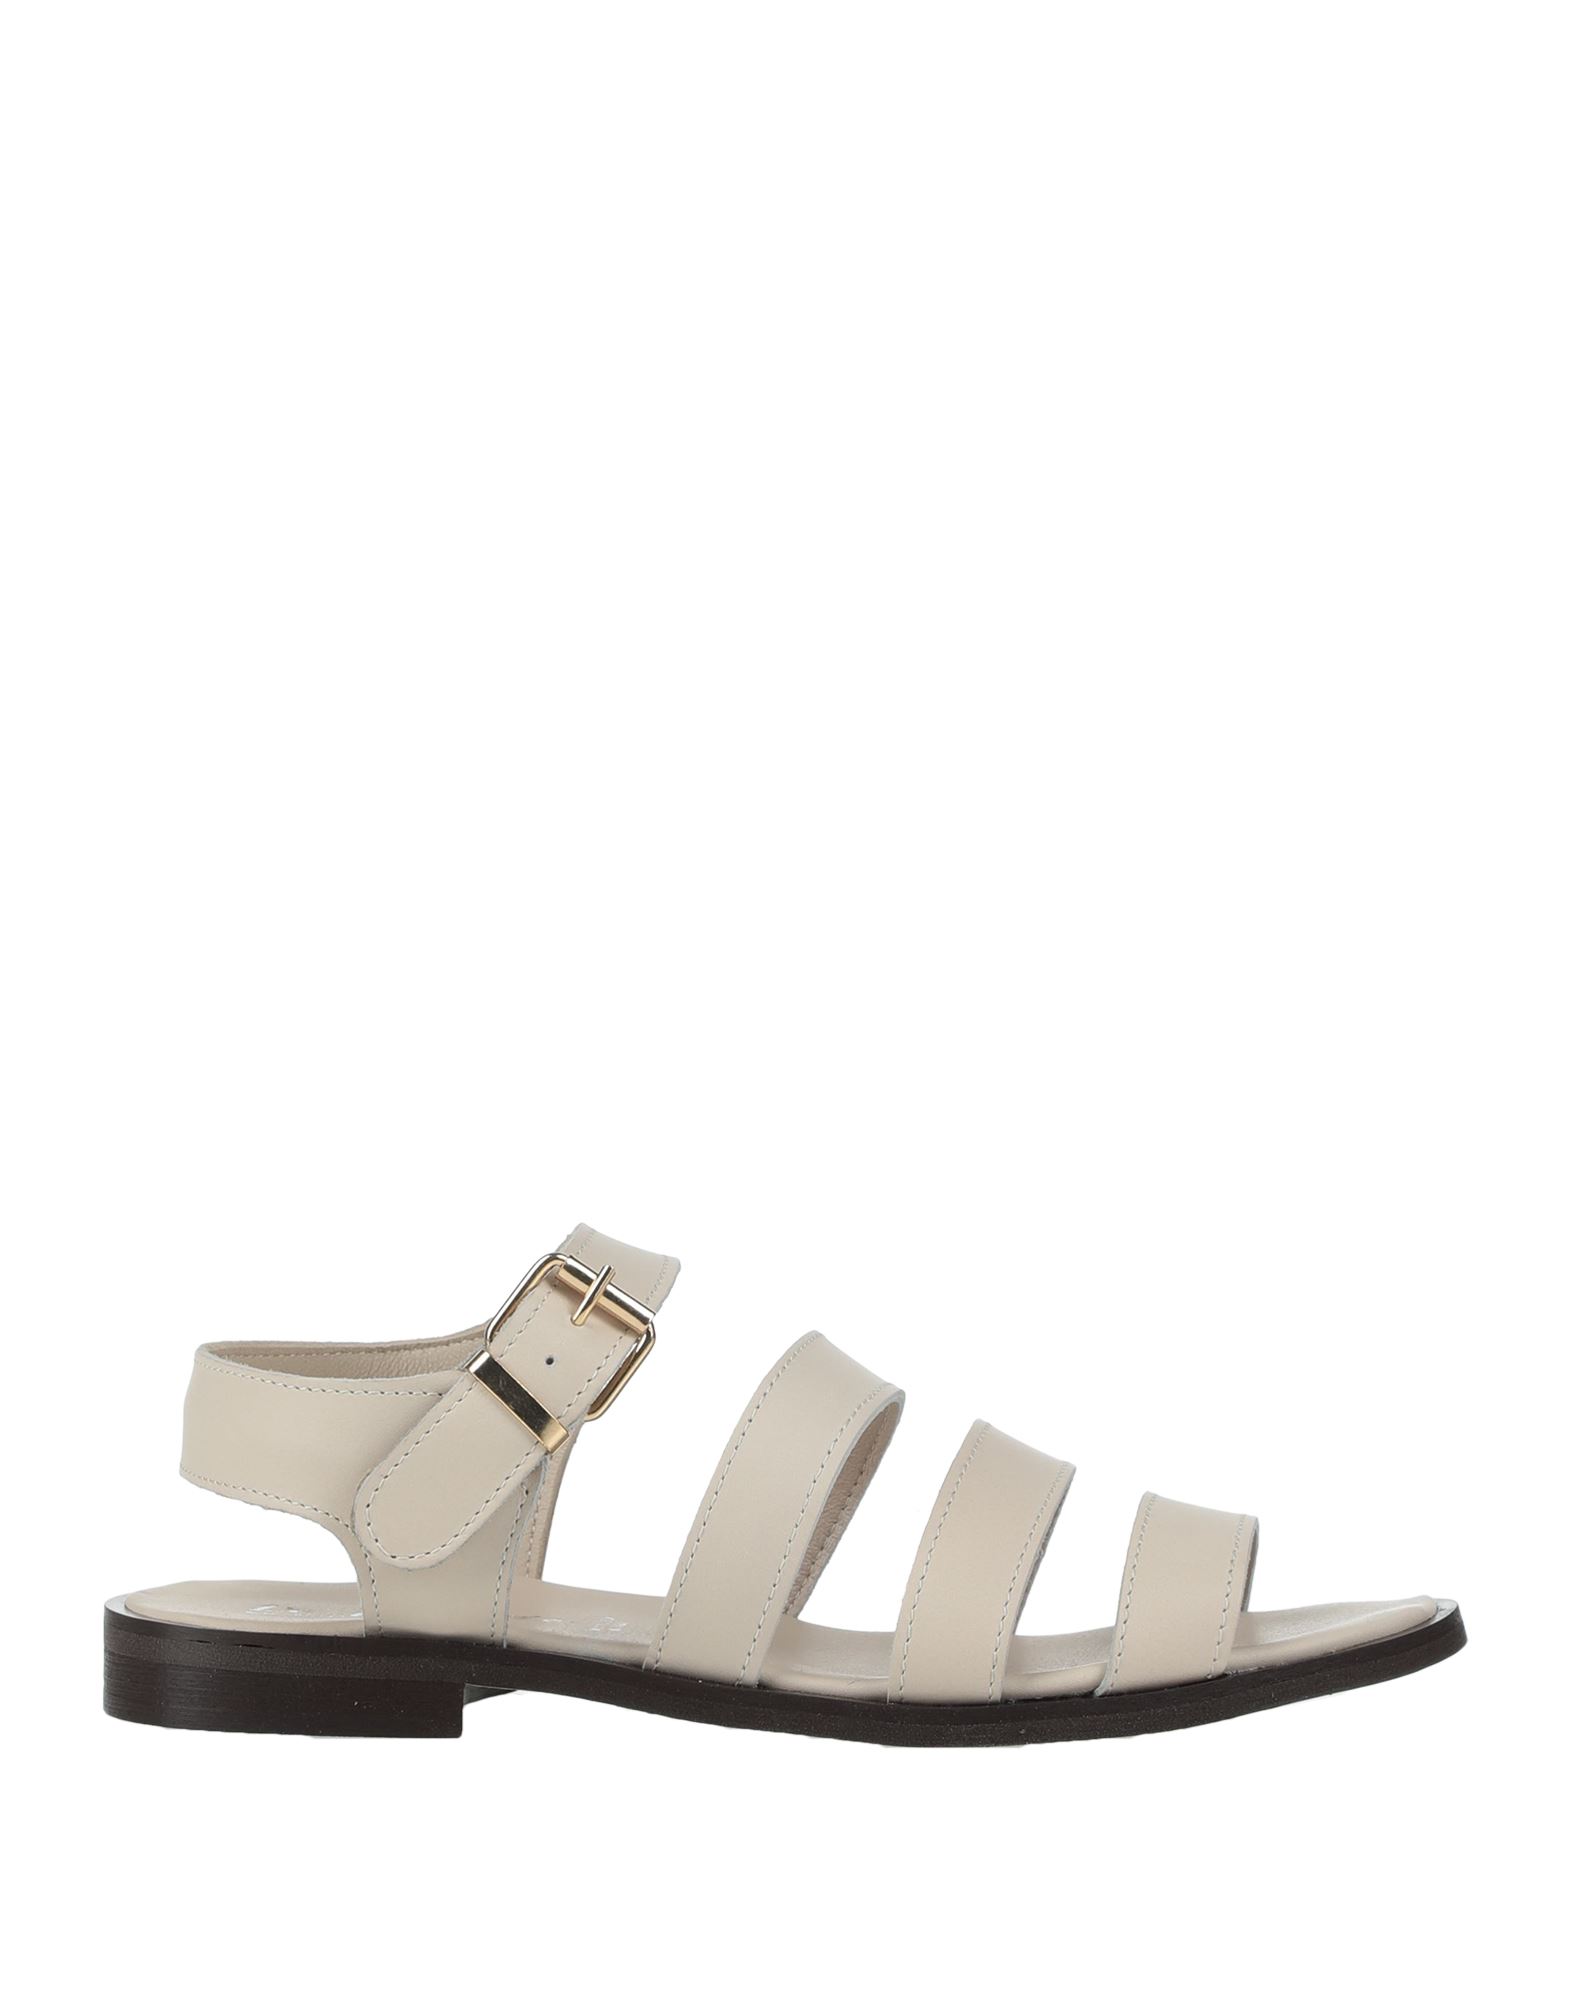 Le Pepite Sandals In White